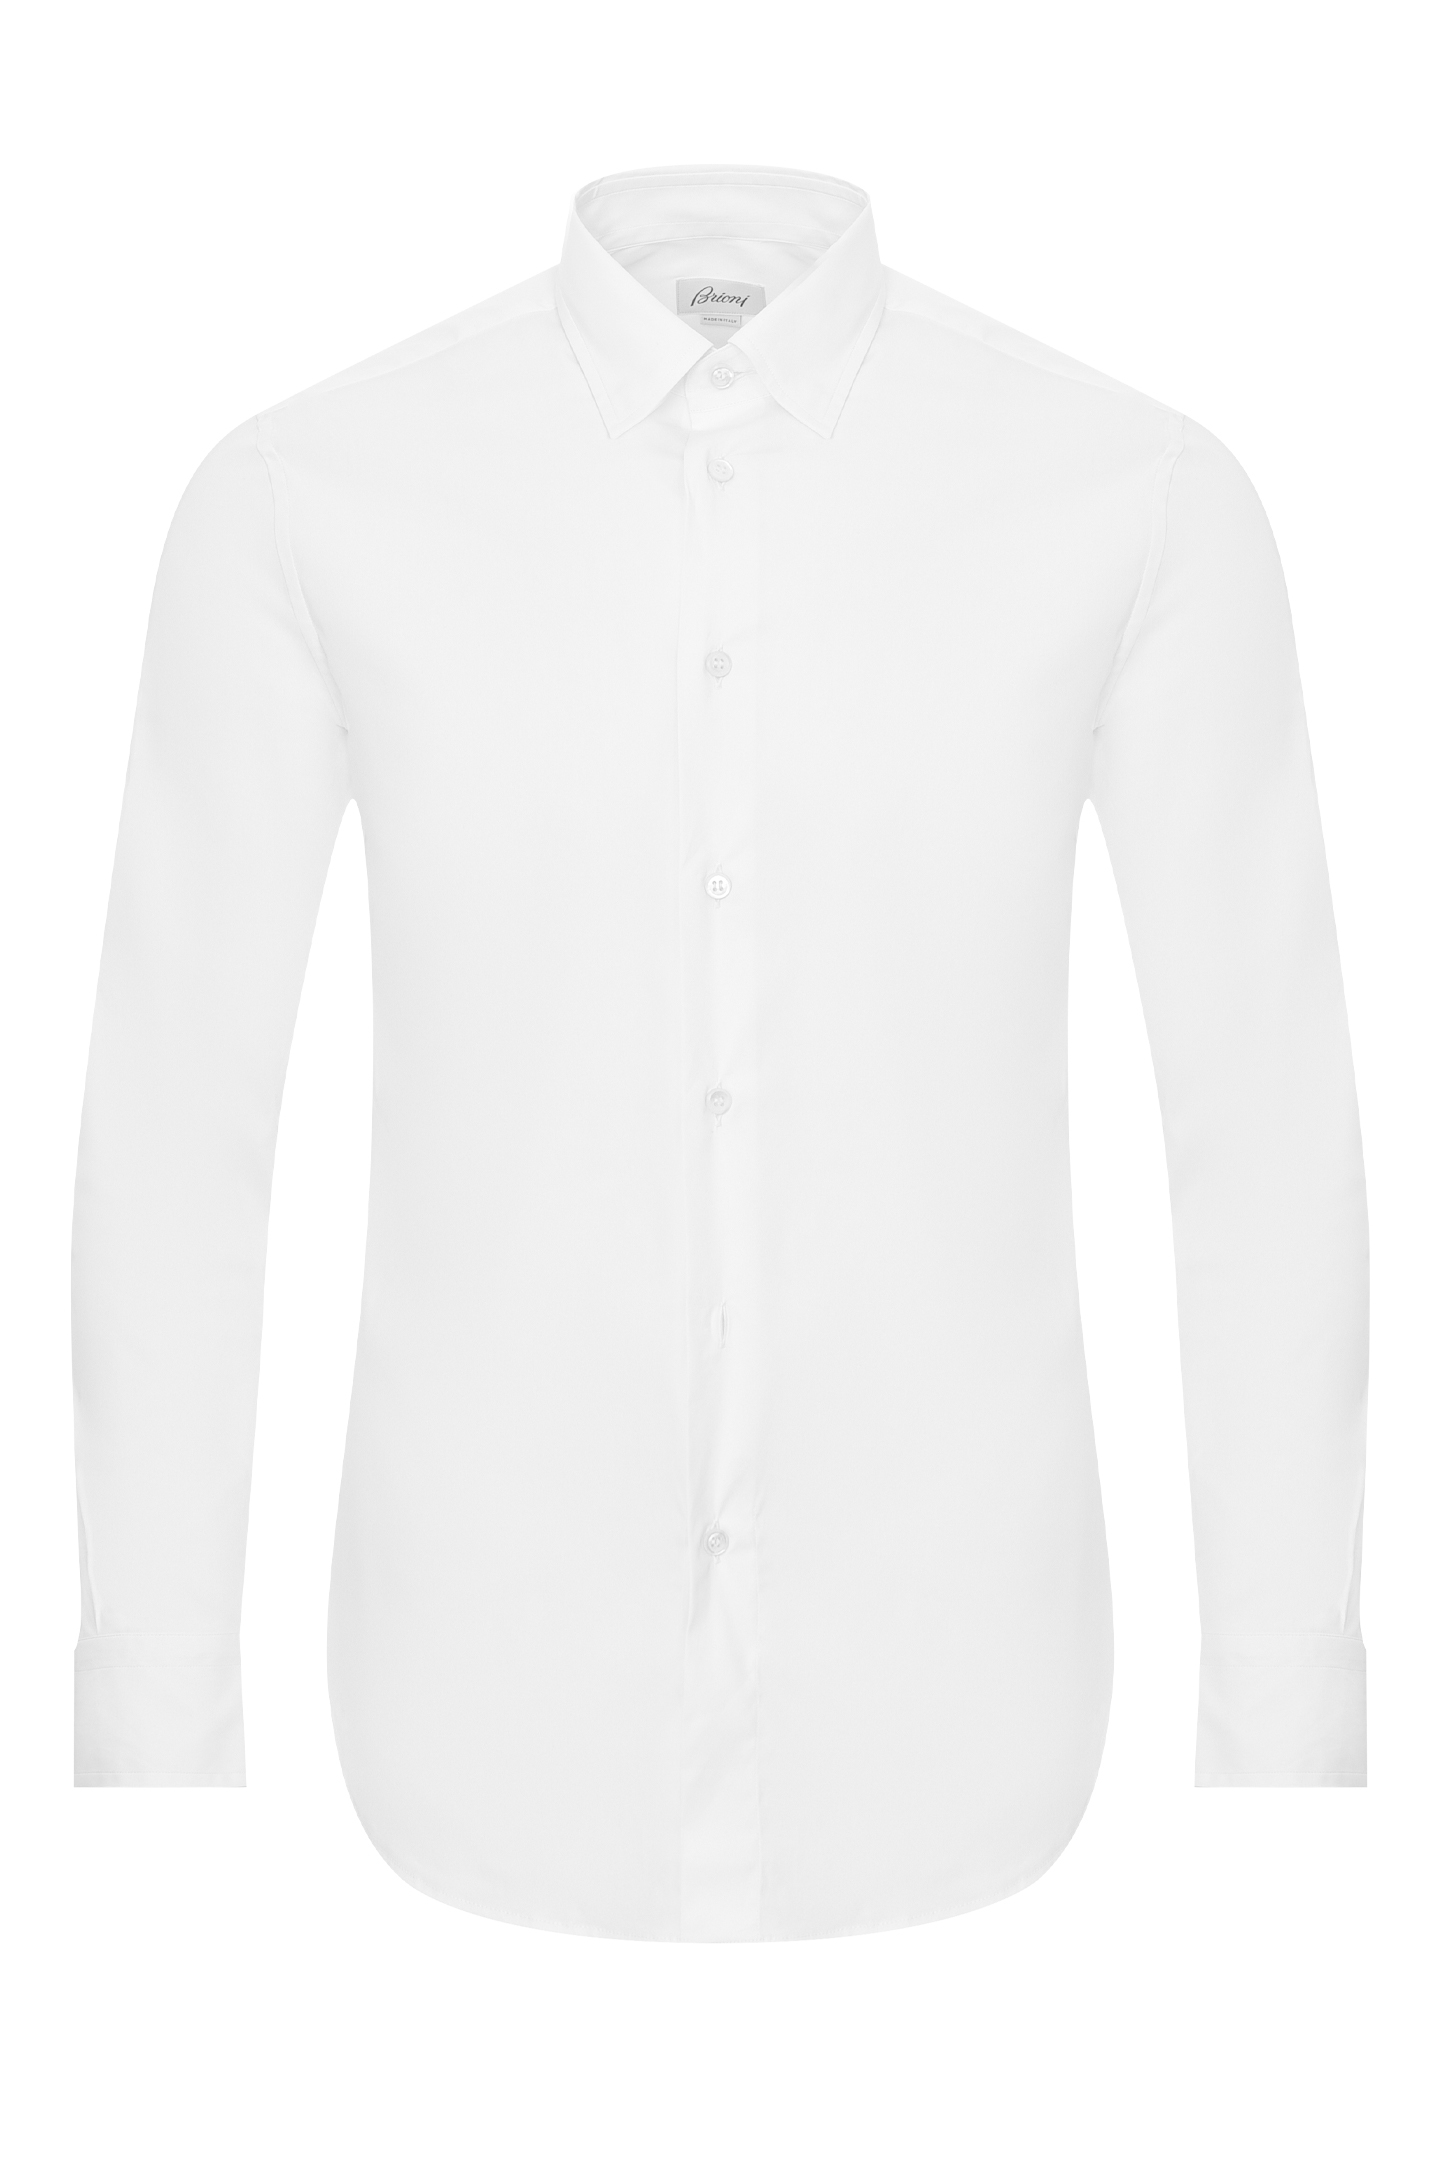 Рубашка BRIONI SCCA0L O8010, цвет: Белый, Мужской